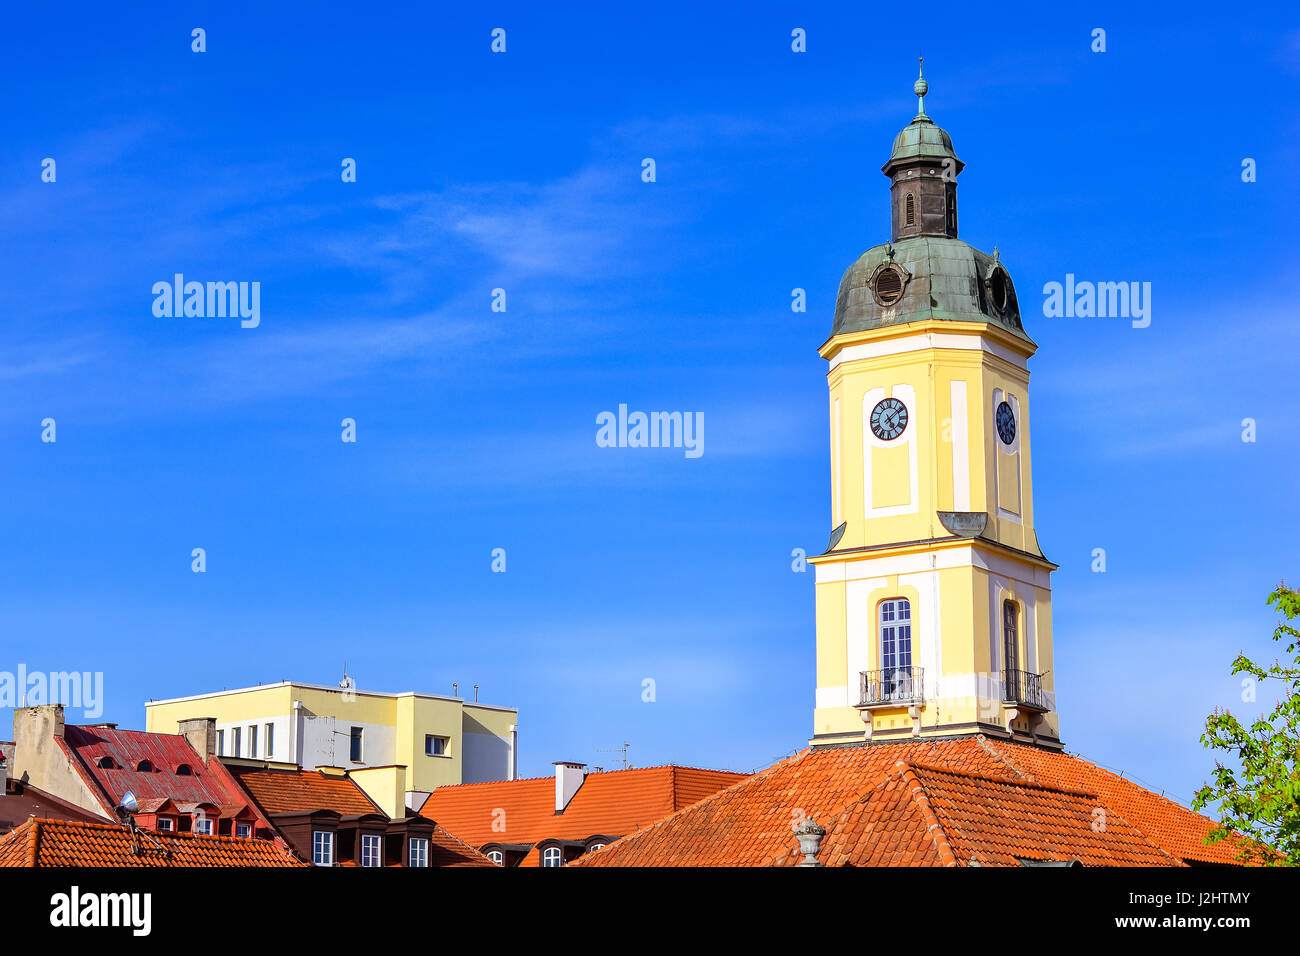 Tour de ville sur le toit de tuiles rouges sur place centrale de Kosciusko dans marché Bialystok, Pologne. Hôtel de ville de style baroque a été construit, l'Arkite 1745-1761 Banque D'Images